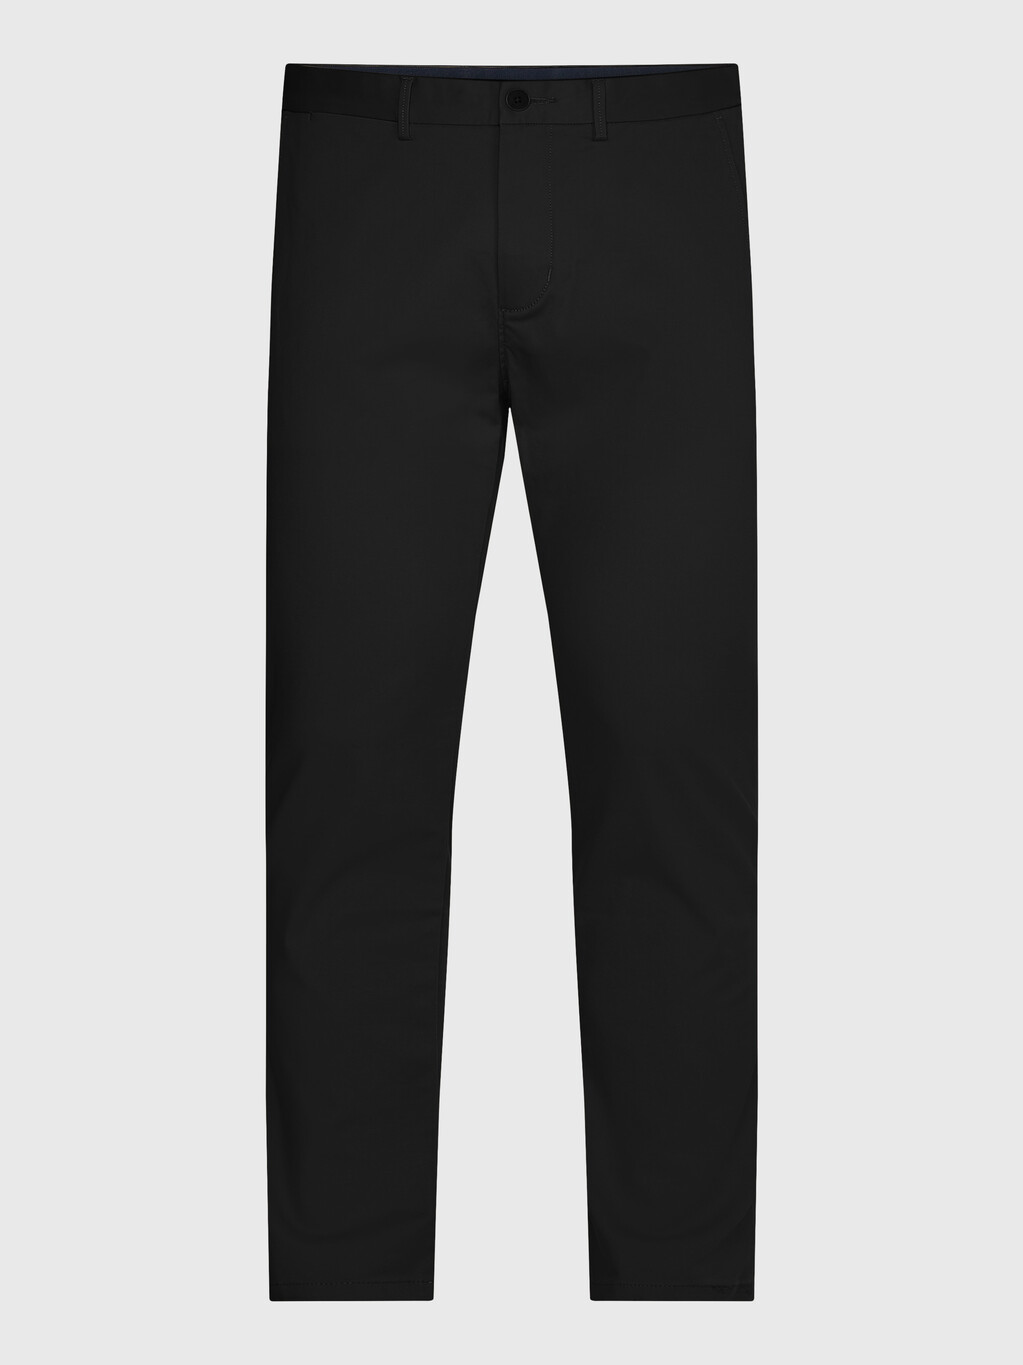 1985 系列 Bleecker 修身斜紋棉布褲, Black, hi-res